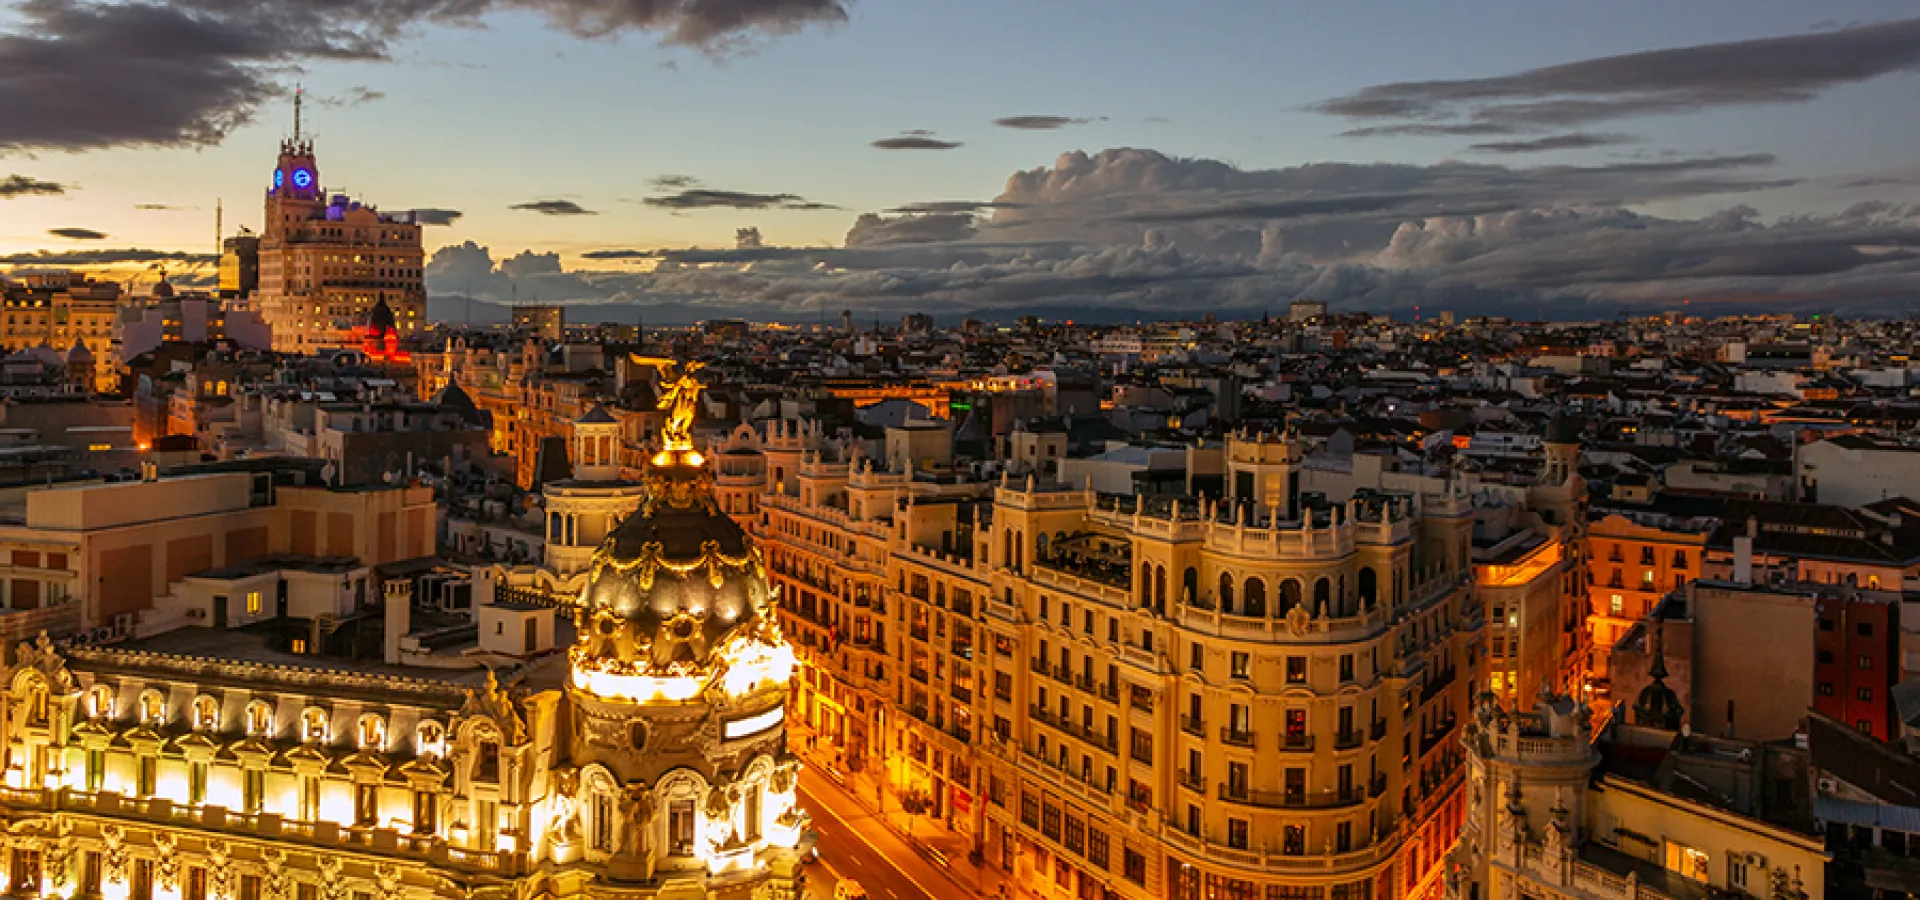 Buildings in Madrid, Spain at night